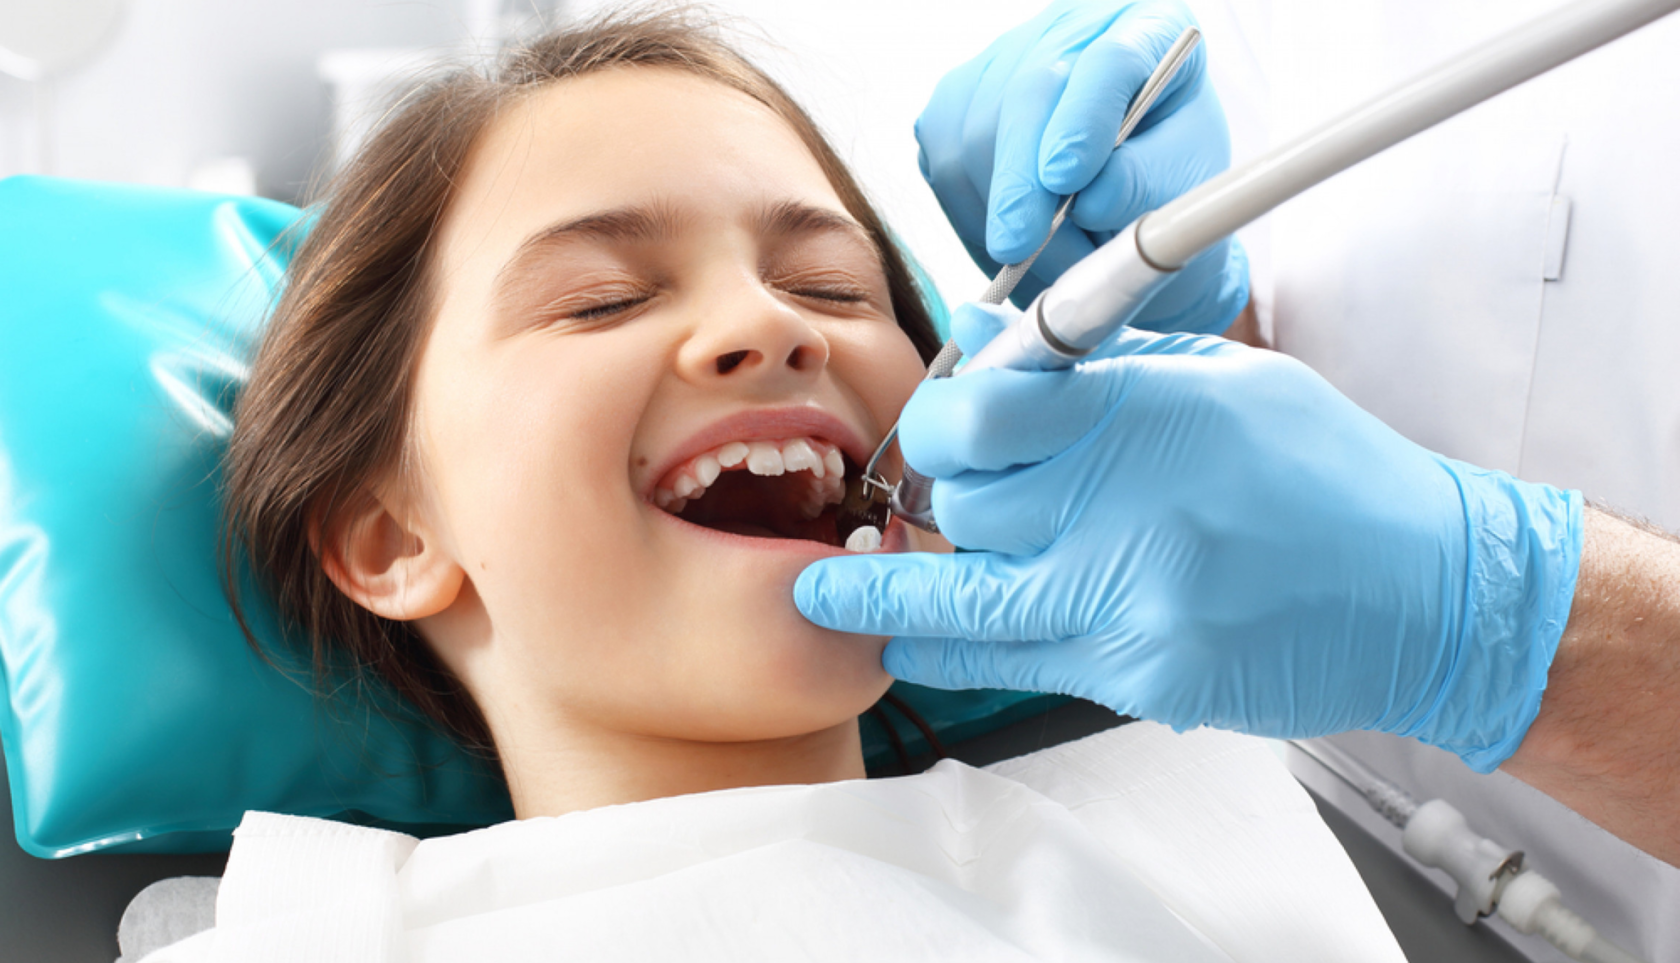 Методы лечения полости рта. Профессиональная гигиена полости рта. Профессиональная гигиена полости рта у детей. Зубы стоматолог. Гигиена рта у стоматолога.